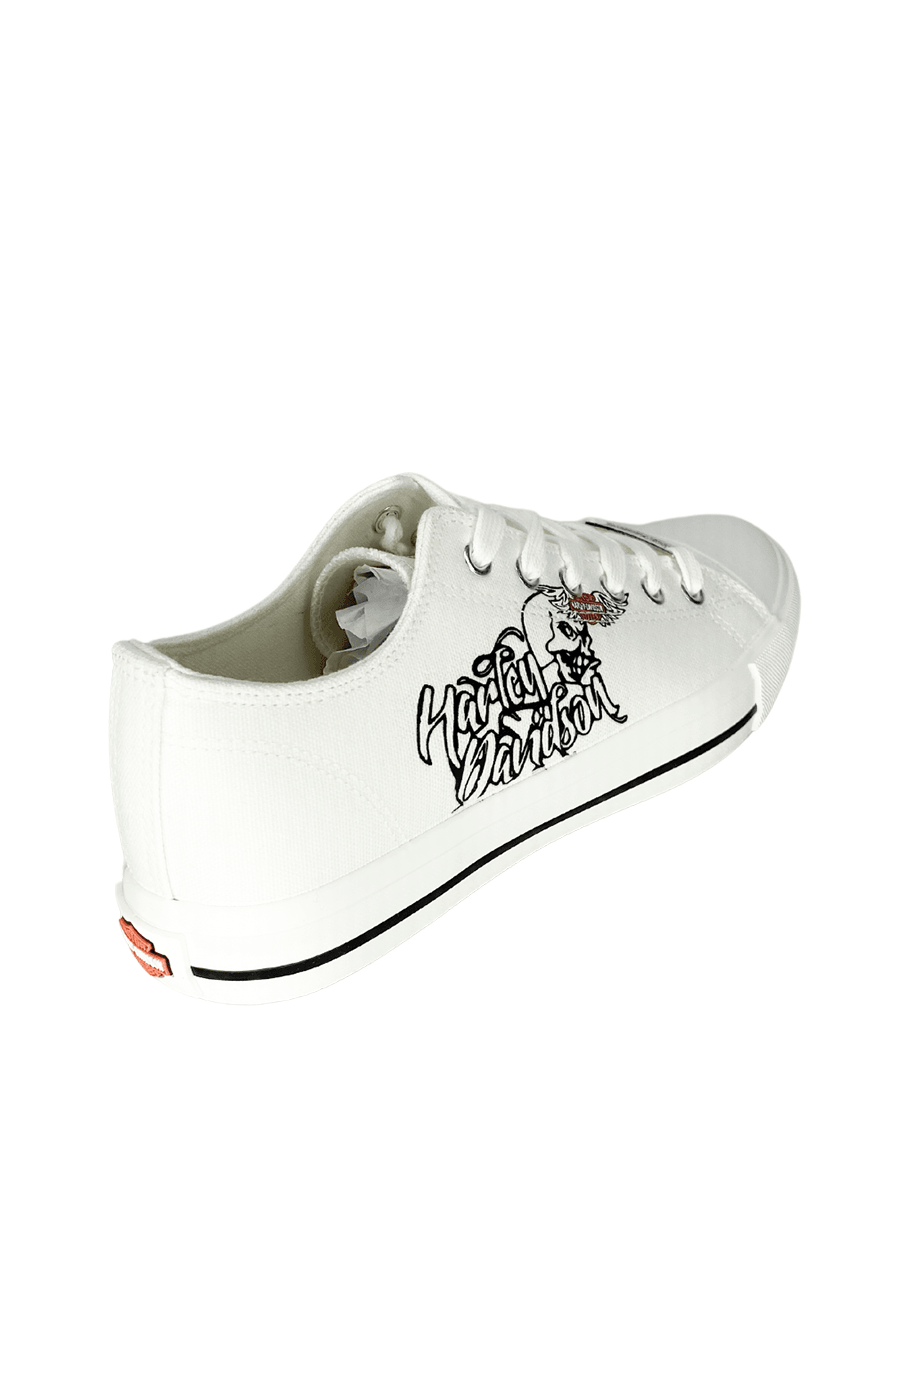 Harley-Davidson® Pomona White Tekstil Erkek Sneaker